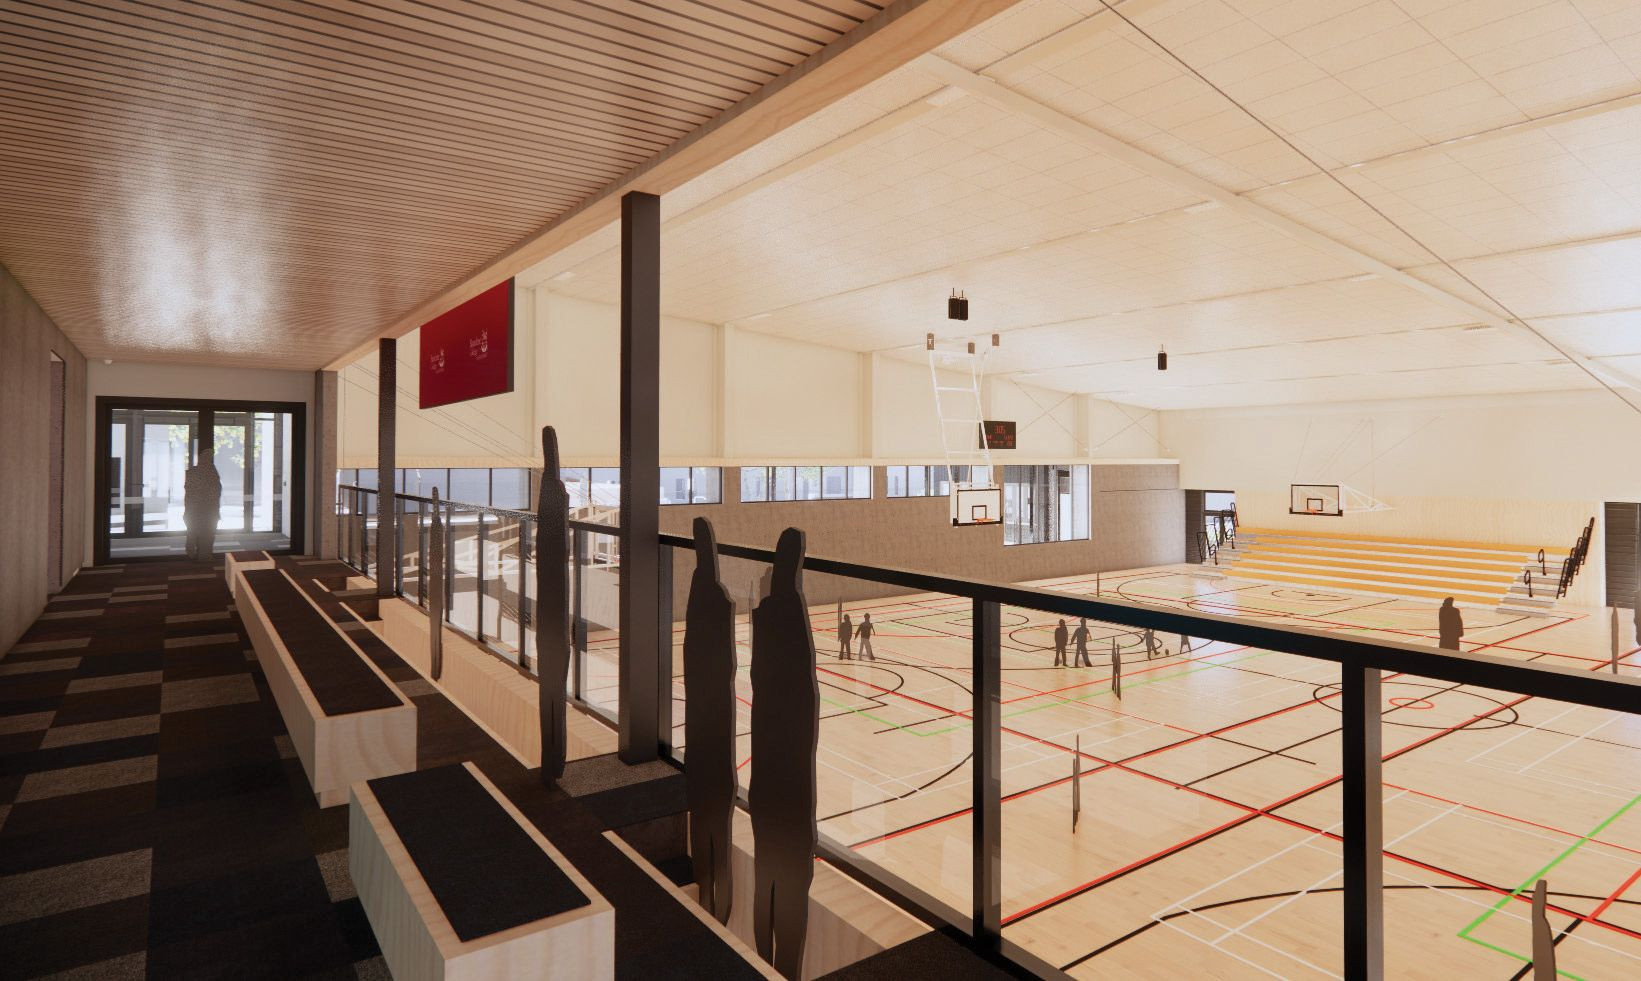 New Gymnasium